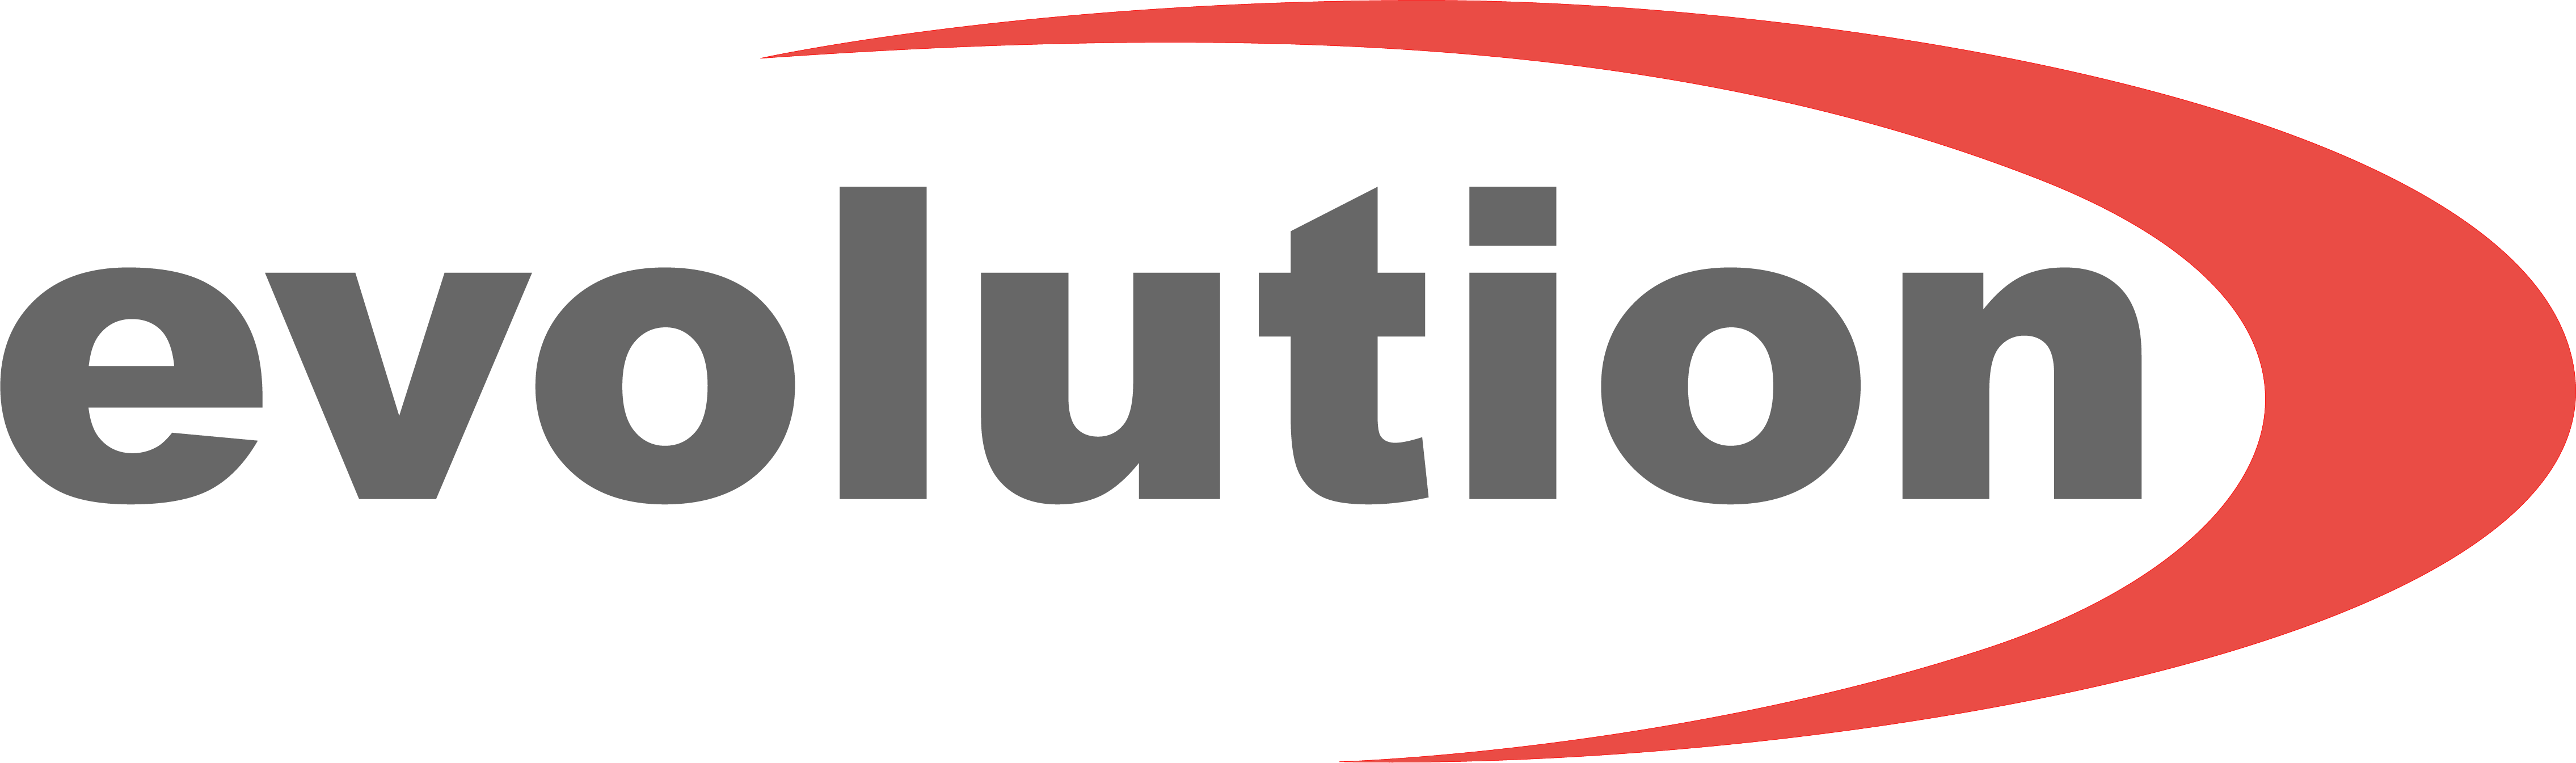 logo for Evolution Fasteners (UK) Ltd